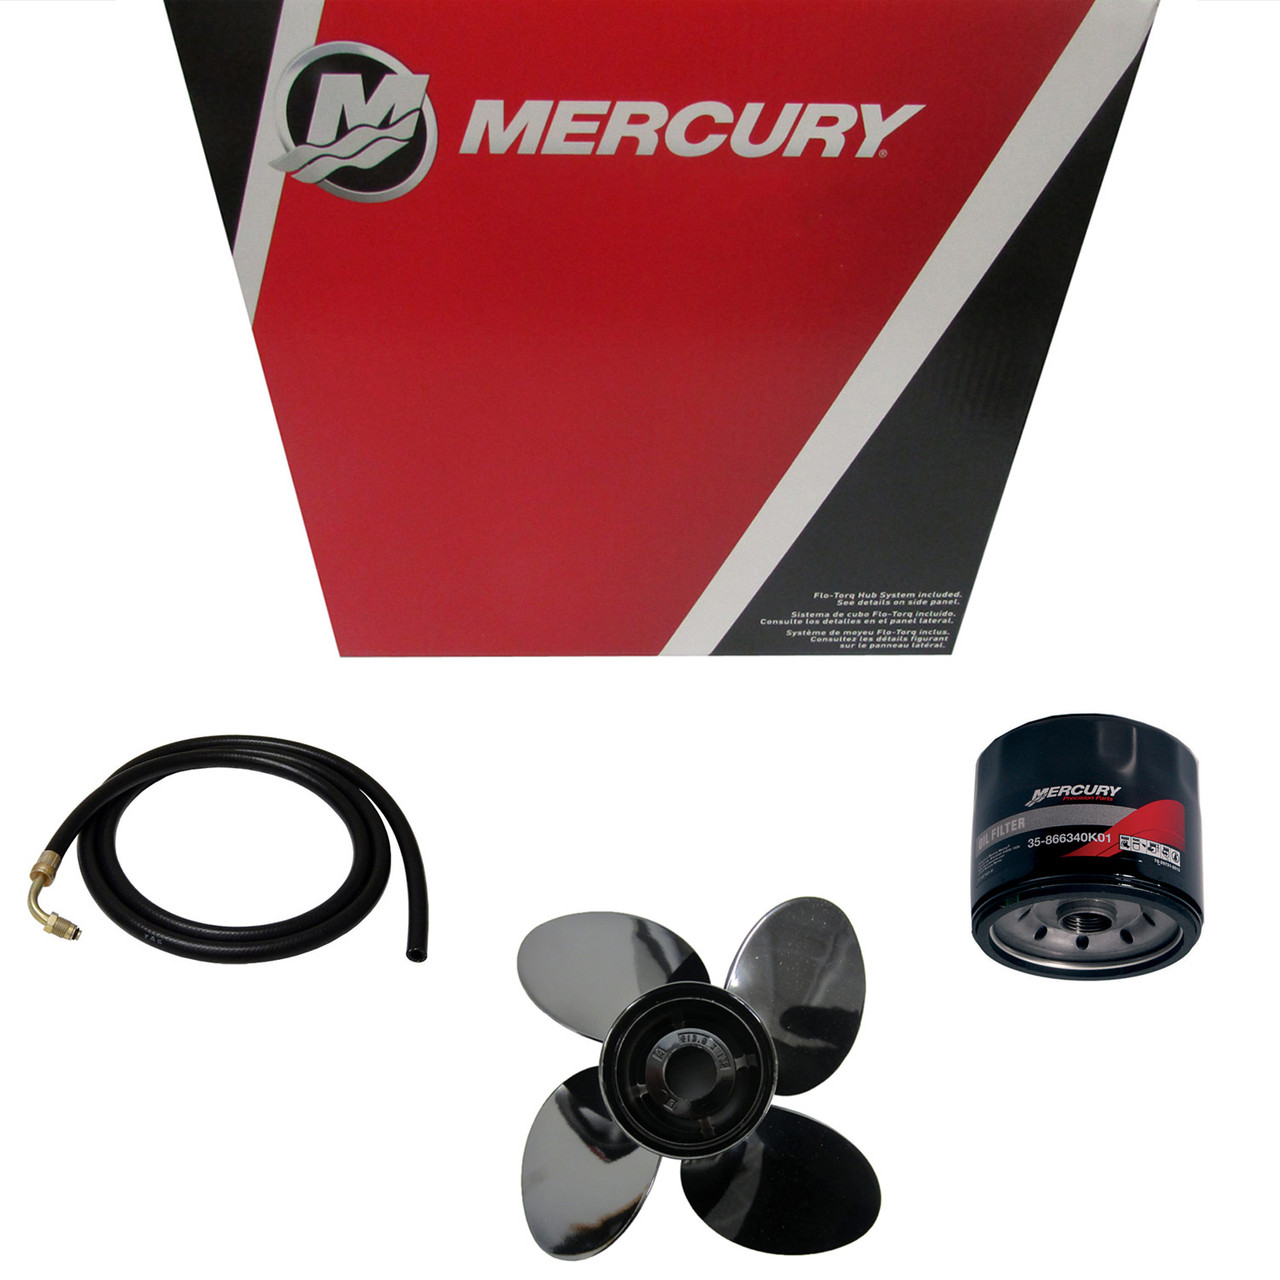 Mercury Marine/Mercruiser  New OEM RELAY 89-898103T09